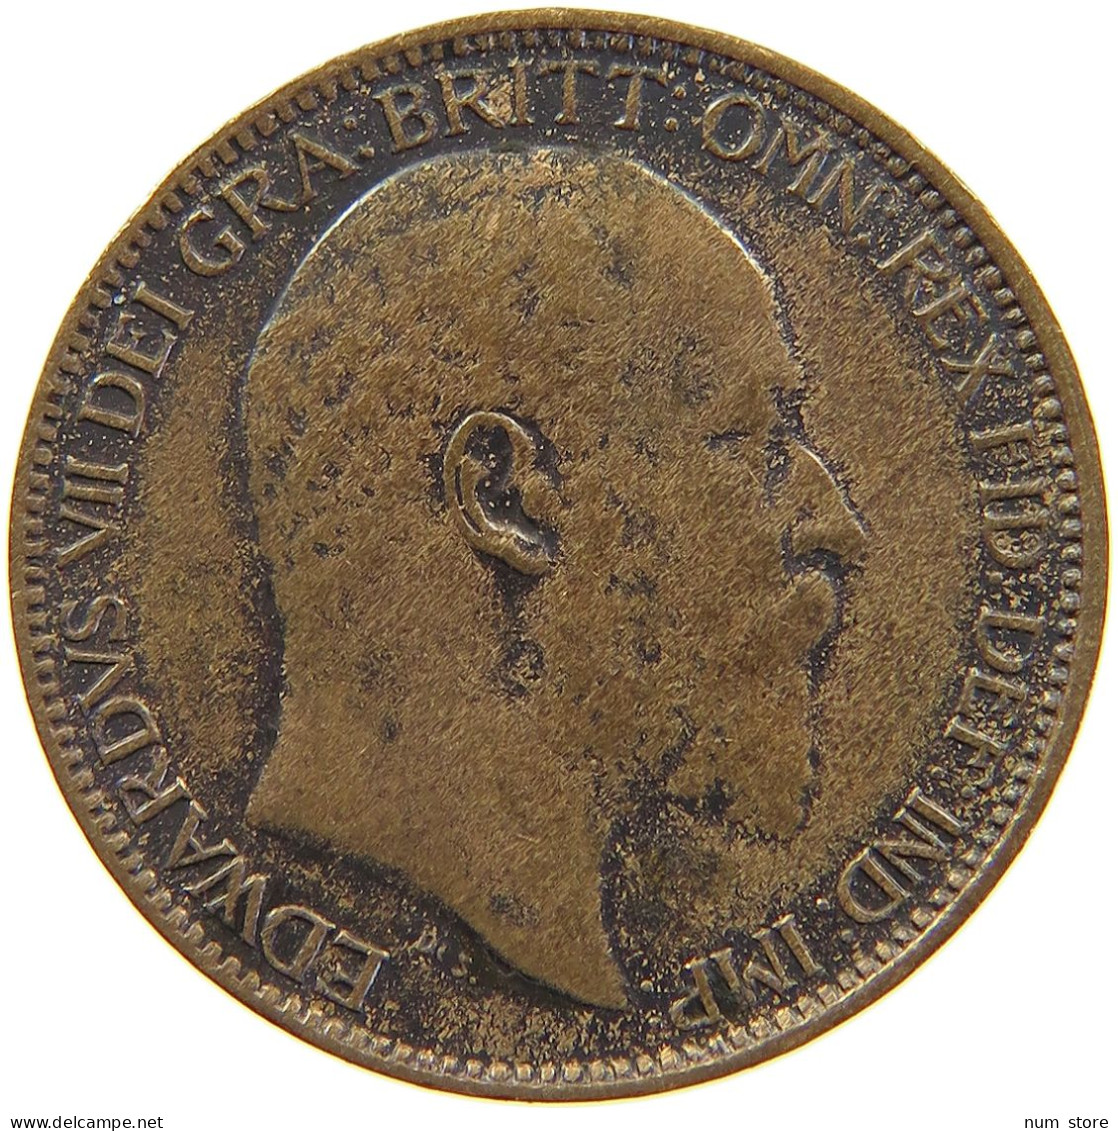 GREAT BRITAIN FARTHING 1909 Edward VII., 1901 - 1910 #c063 0273 - B. 1 Farthing